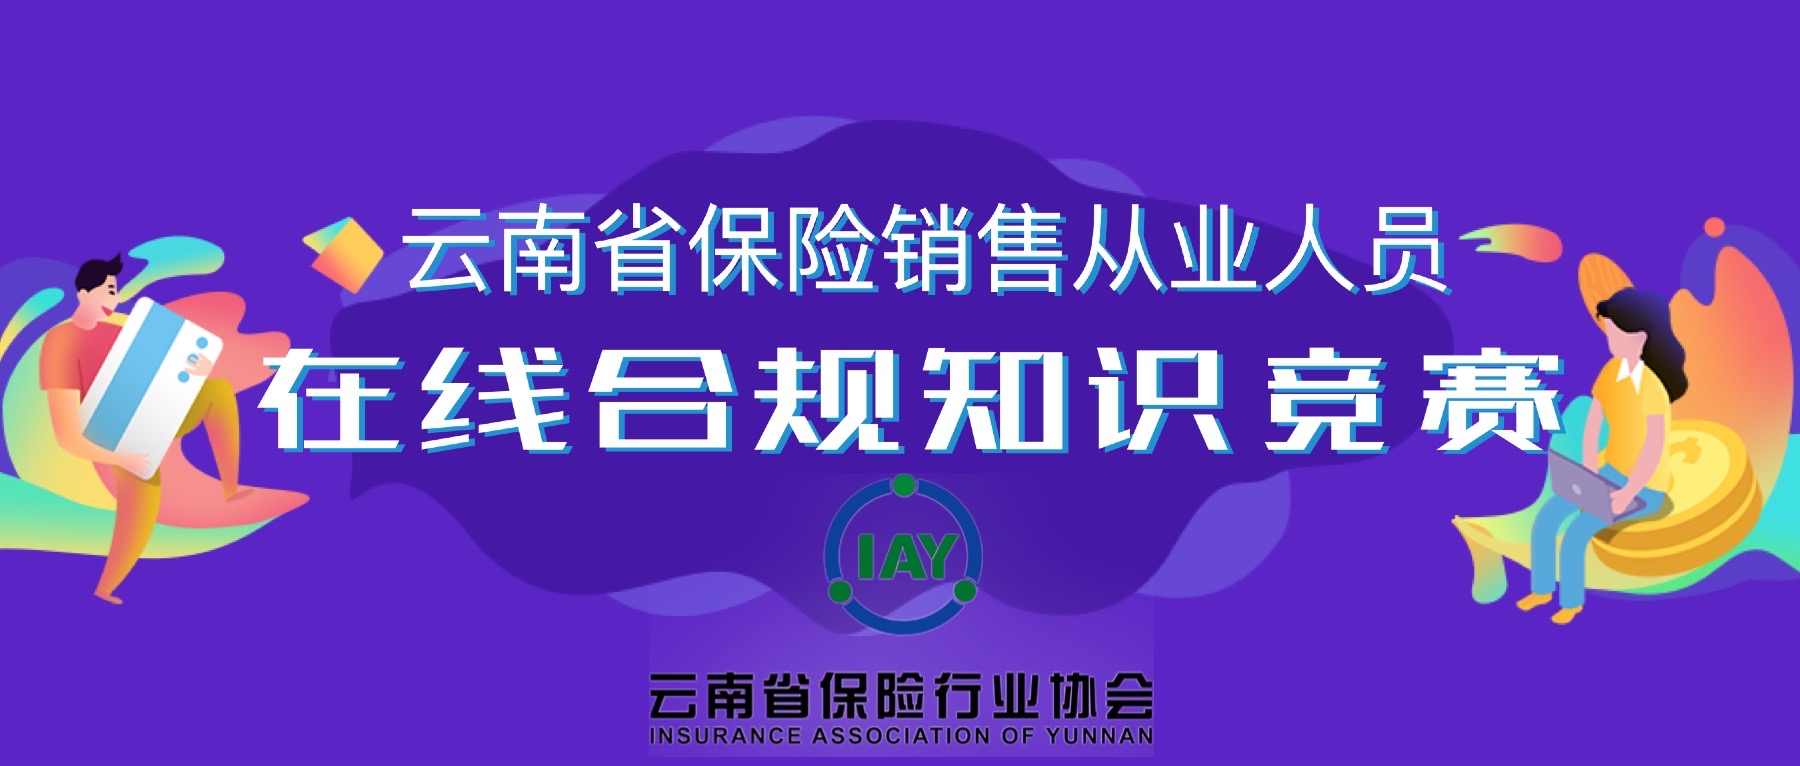 云南省保险销售从业人员 在线合规知识竞赛圆满结束